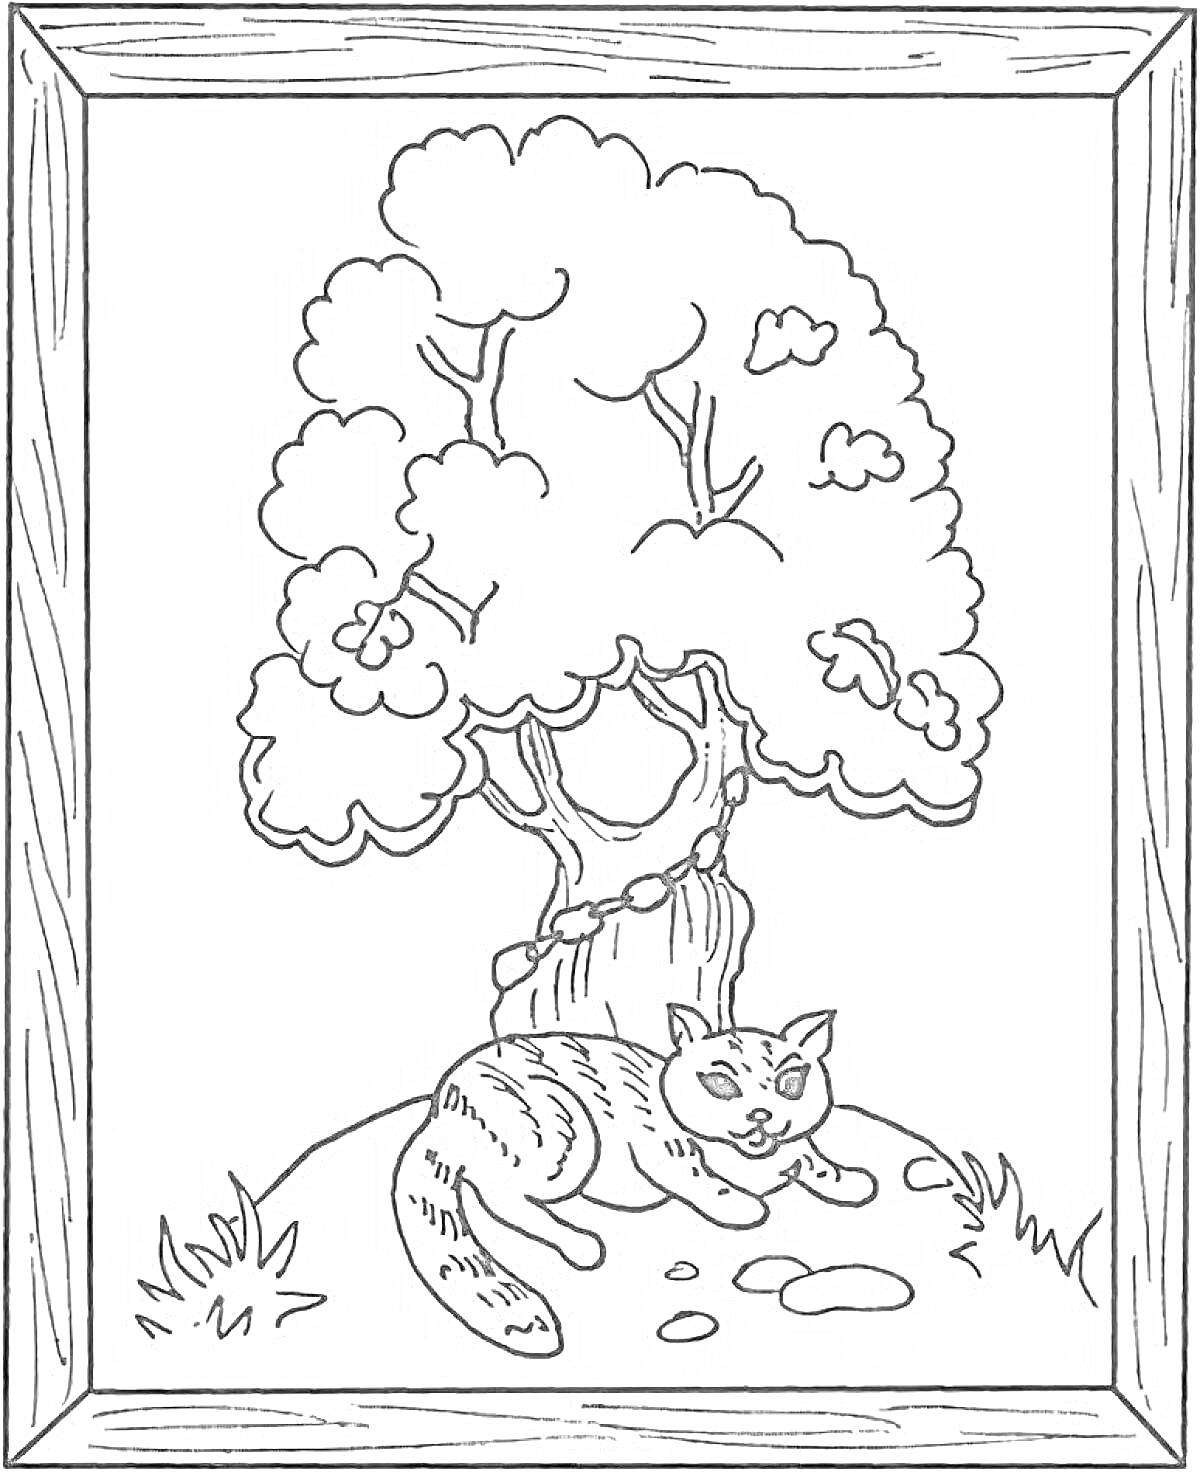 Раскраска Кот в научной шапочке под деревом из сказки Пушкина, с обрамлением в рамку